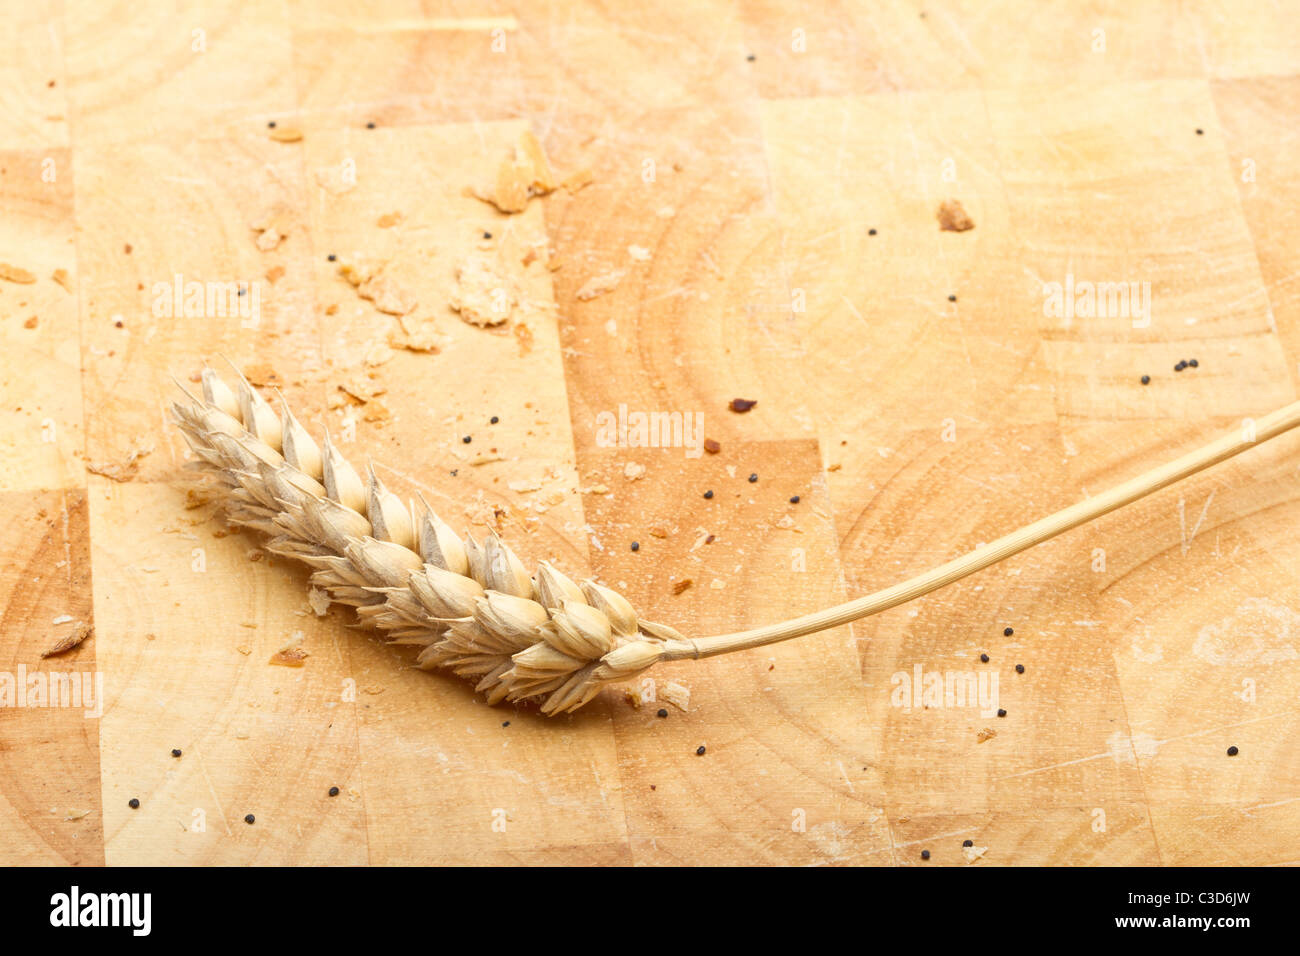 Oídos secos de la cosecha del cereal en madera tablero con pan rallado y semillas de adormidera. Foto de stock